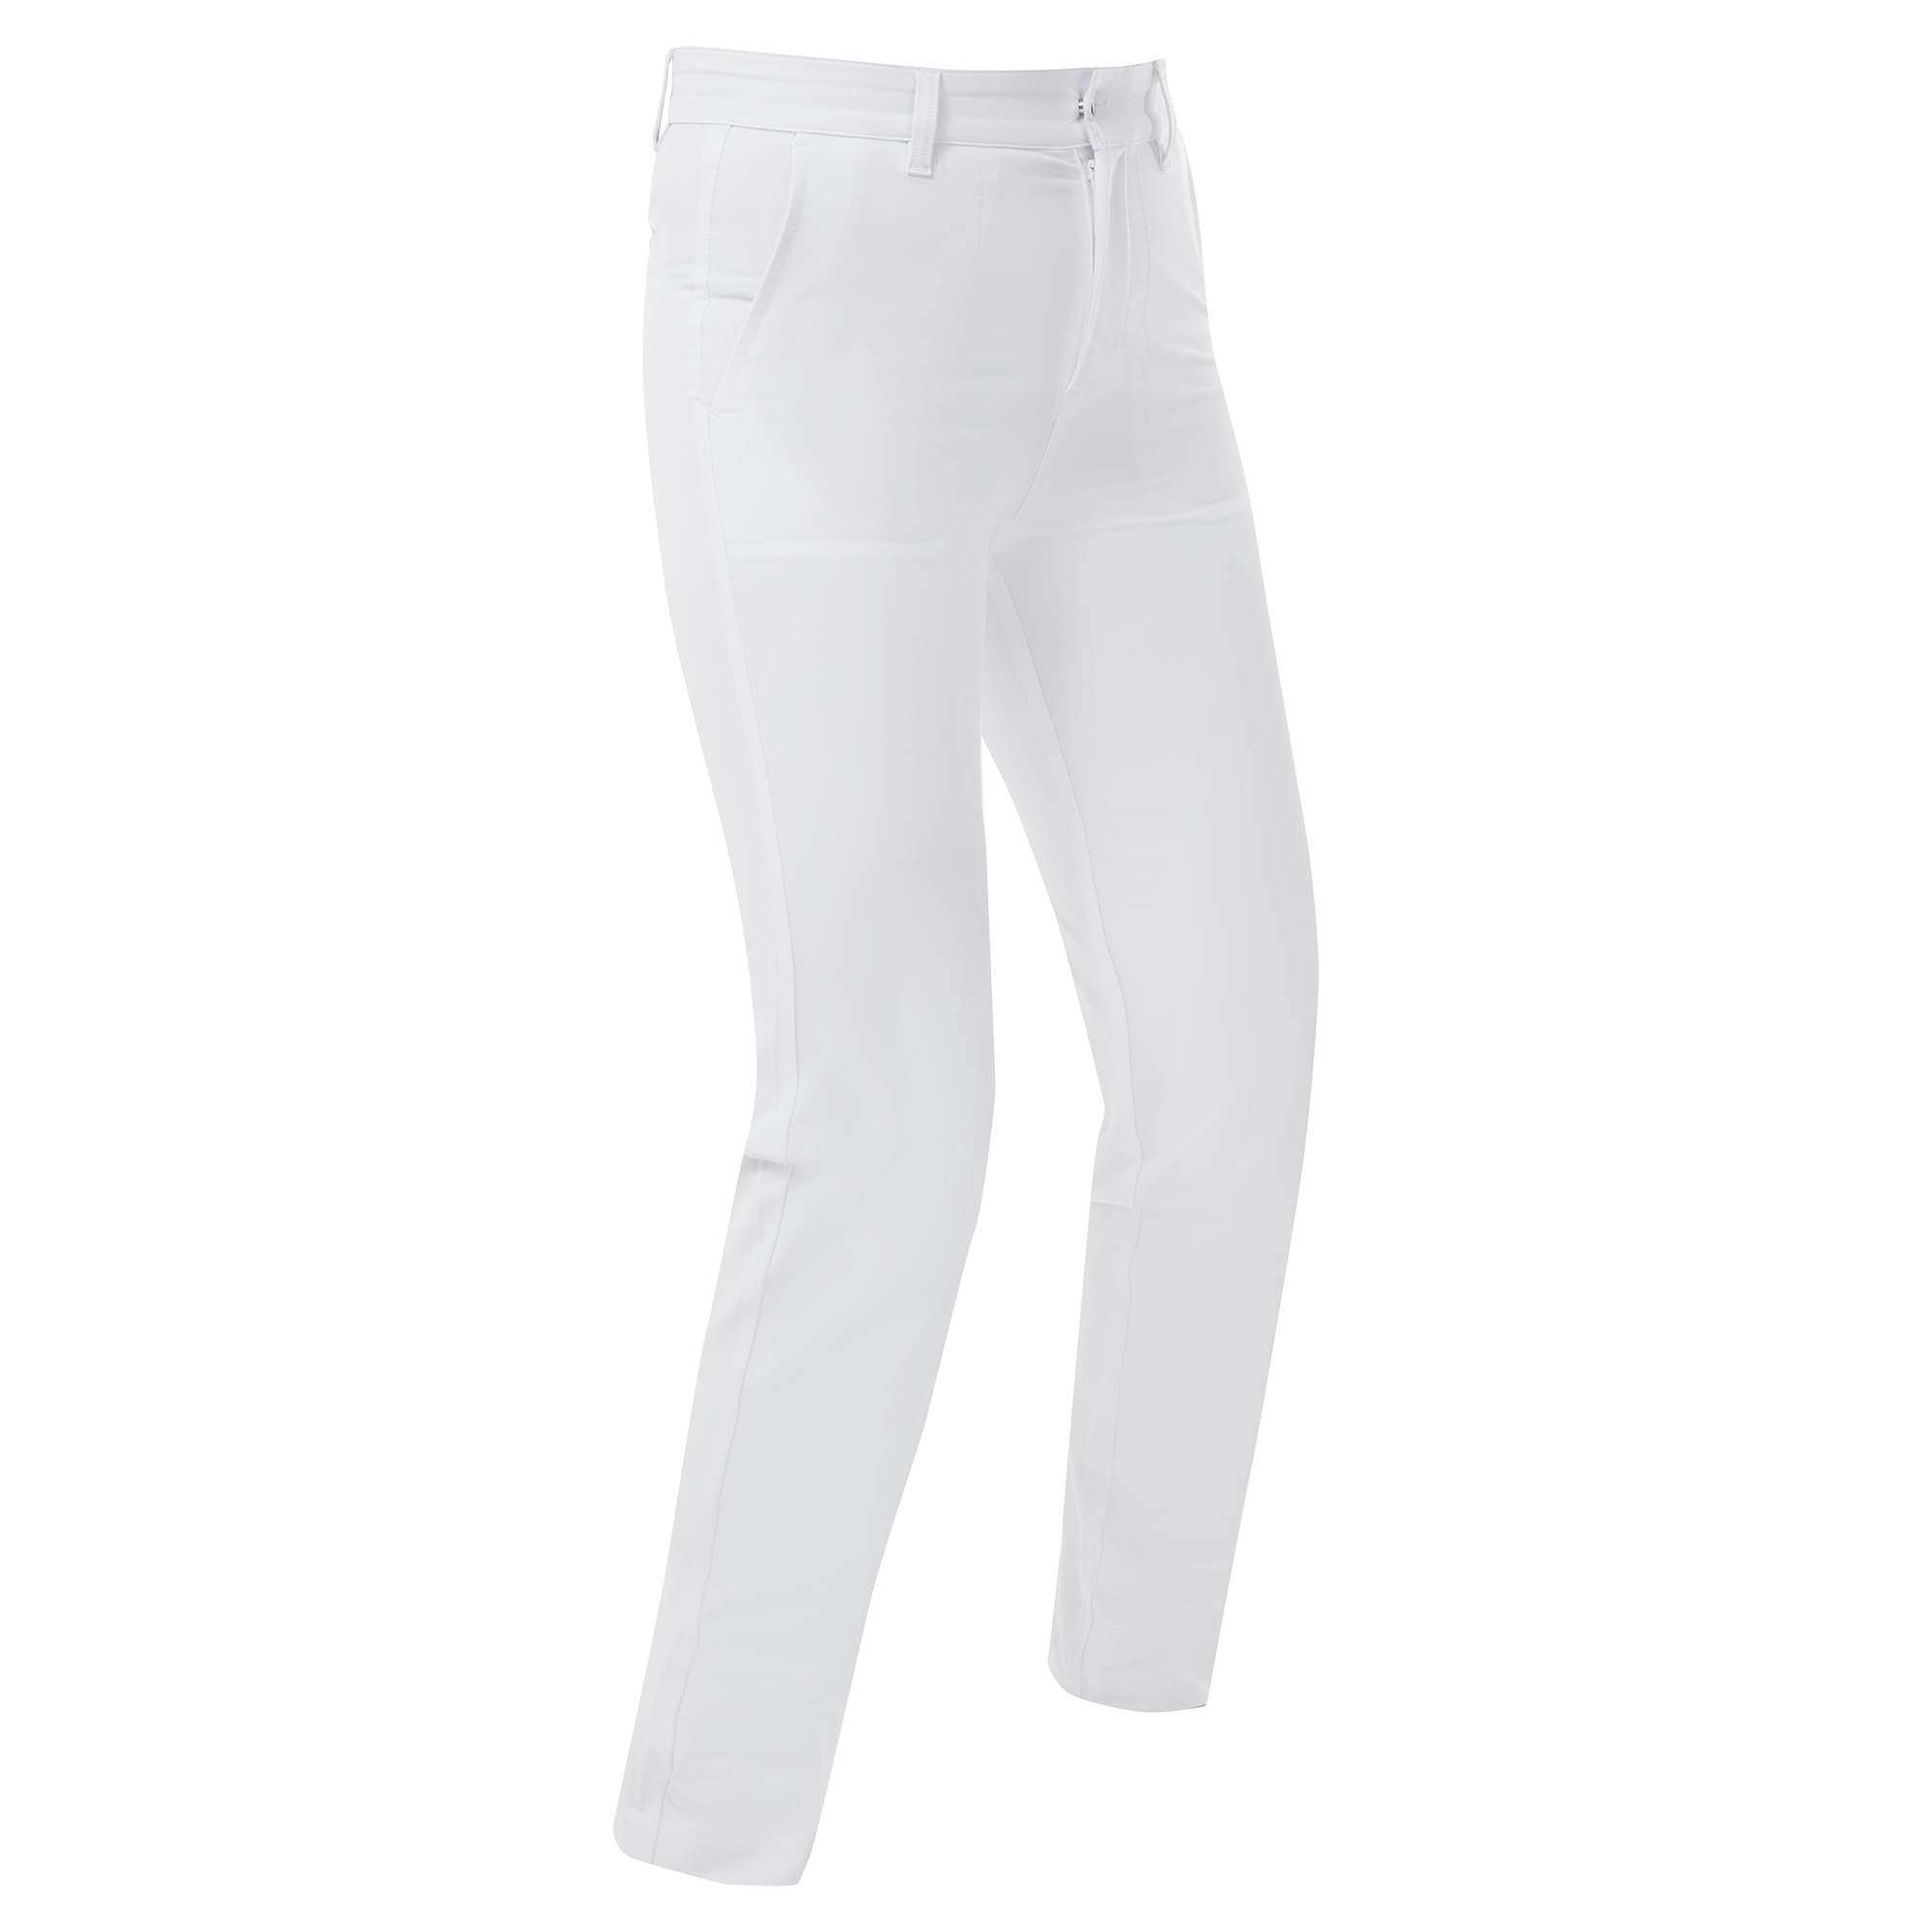 FootJoy Stretch dámské golfové kalhoty, bílé, vel. L